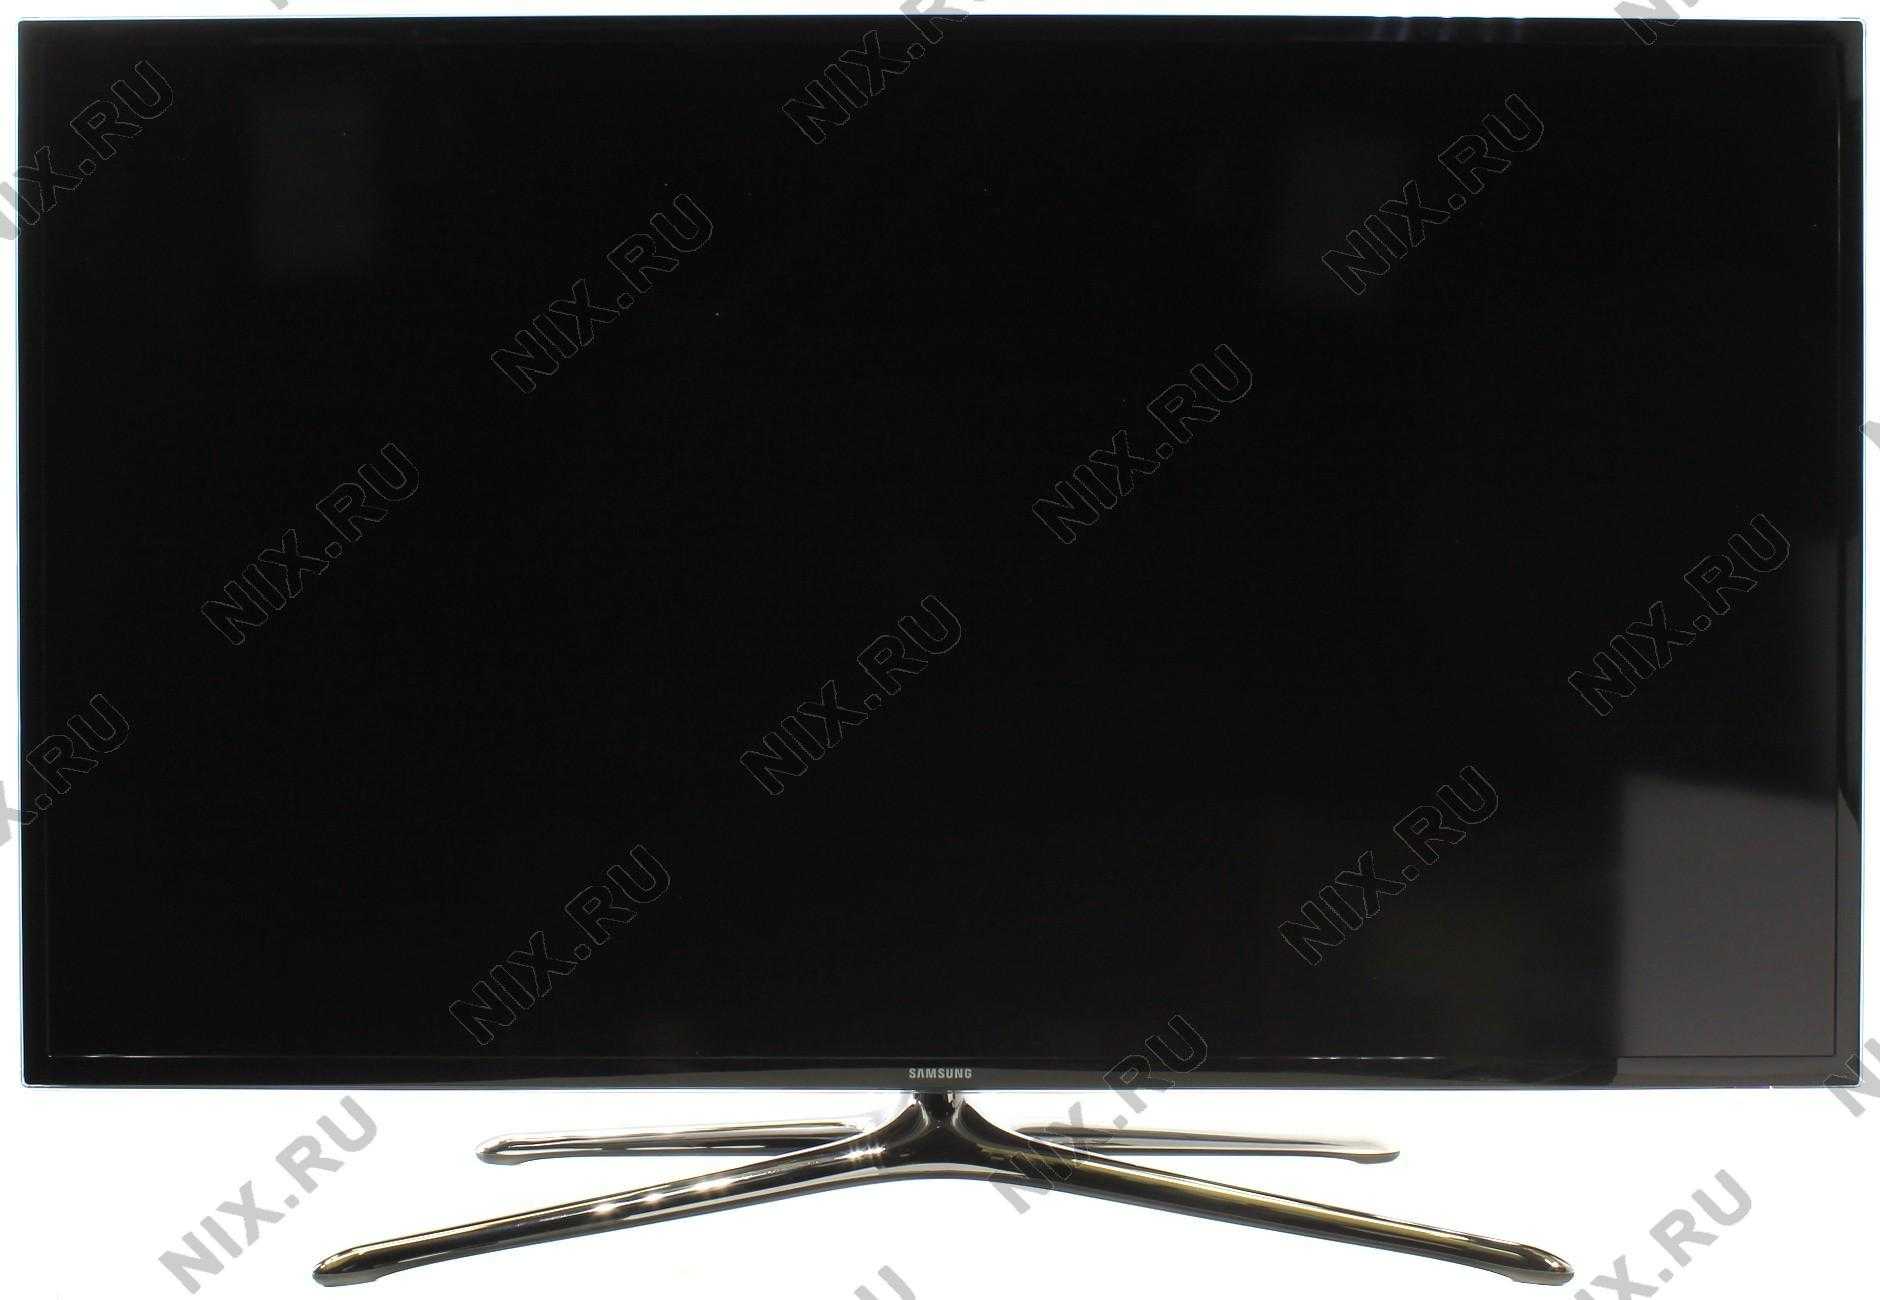 Samsung ue46f6400акx (черный) - купить , скидки, цена, отзывы, обзор, характеристики - телевизоры